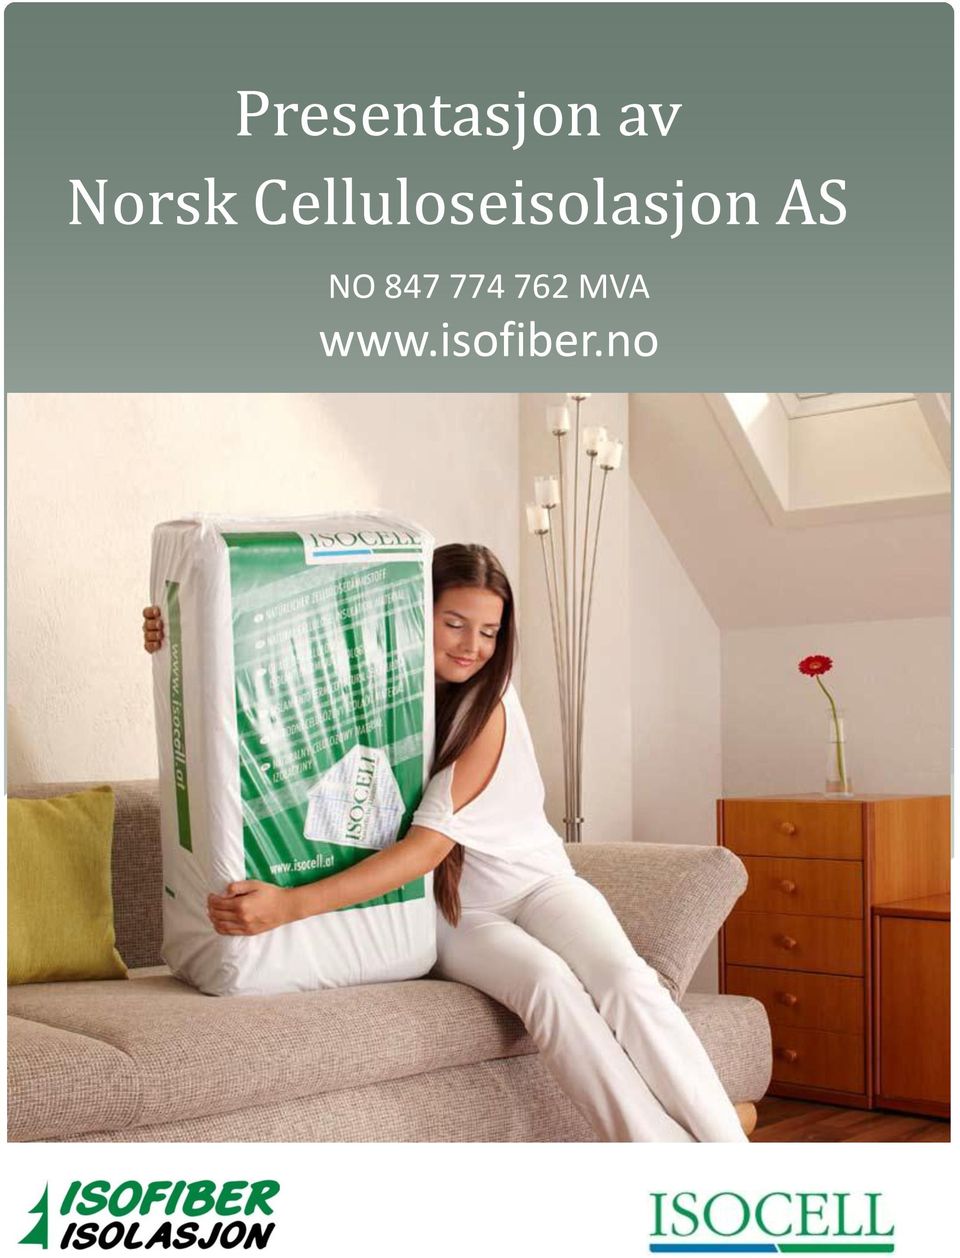 Celluloseisolasjon